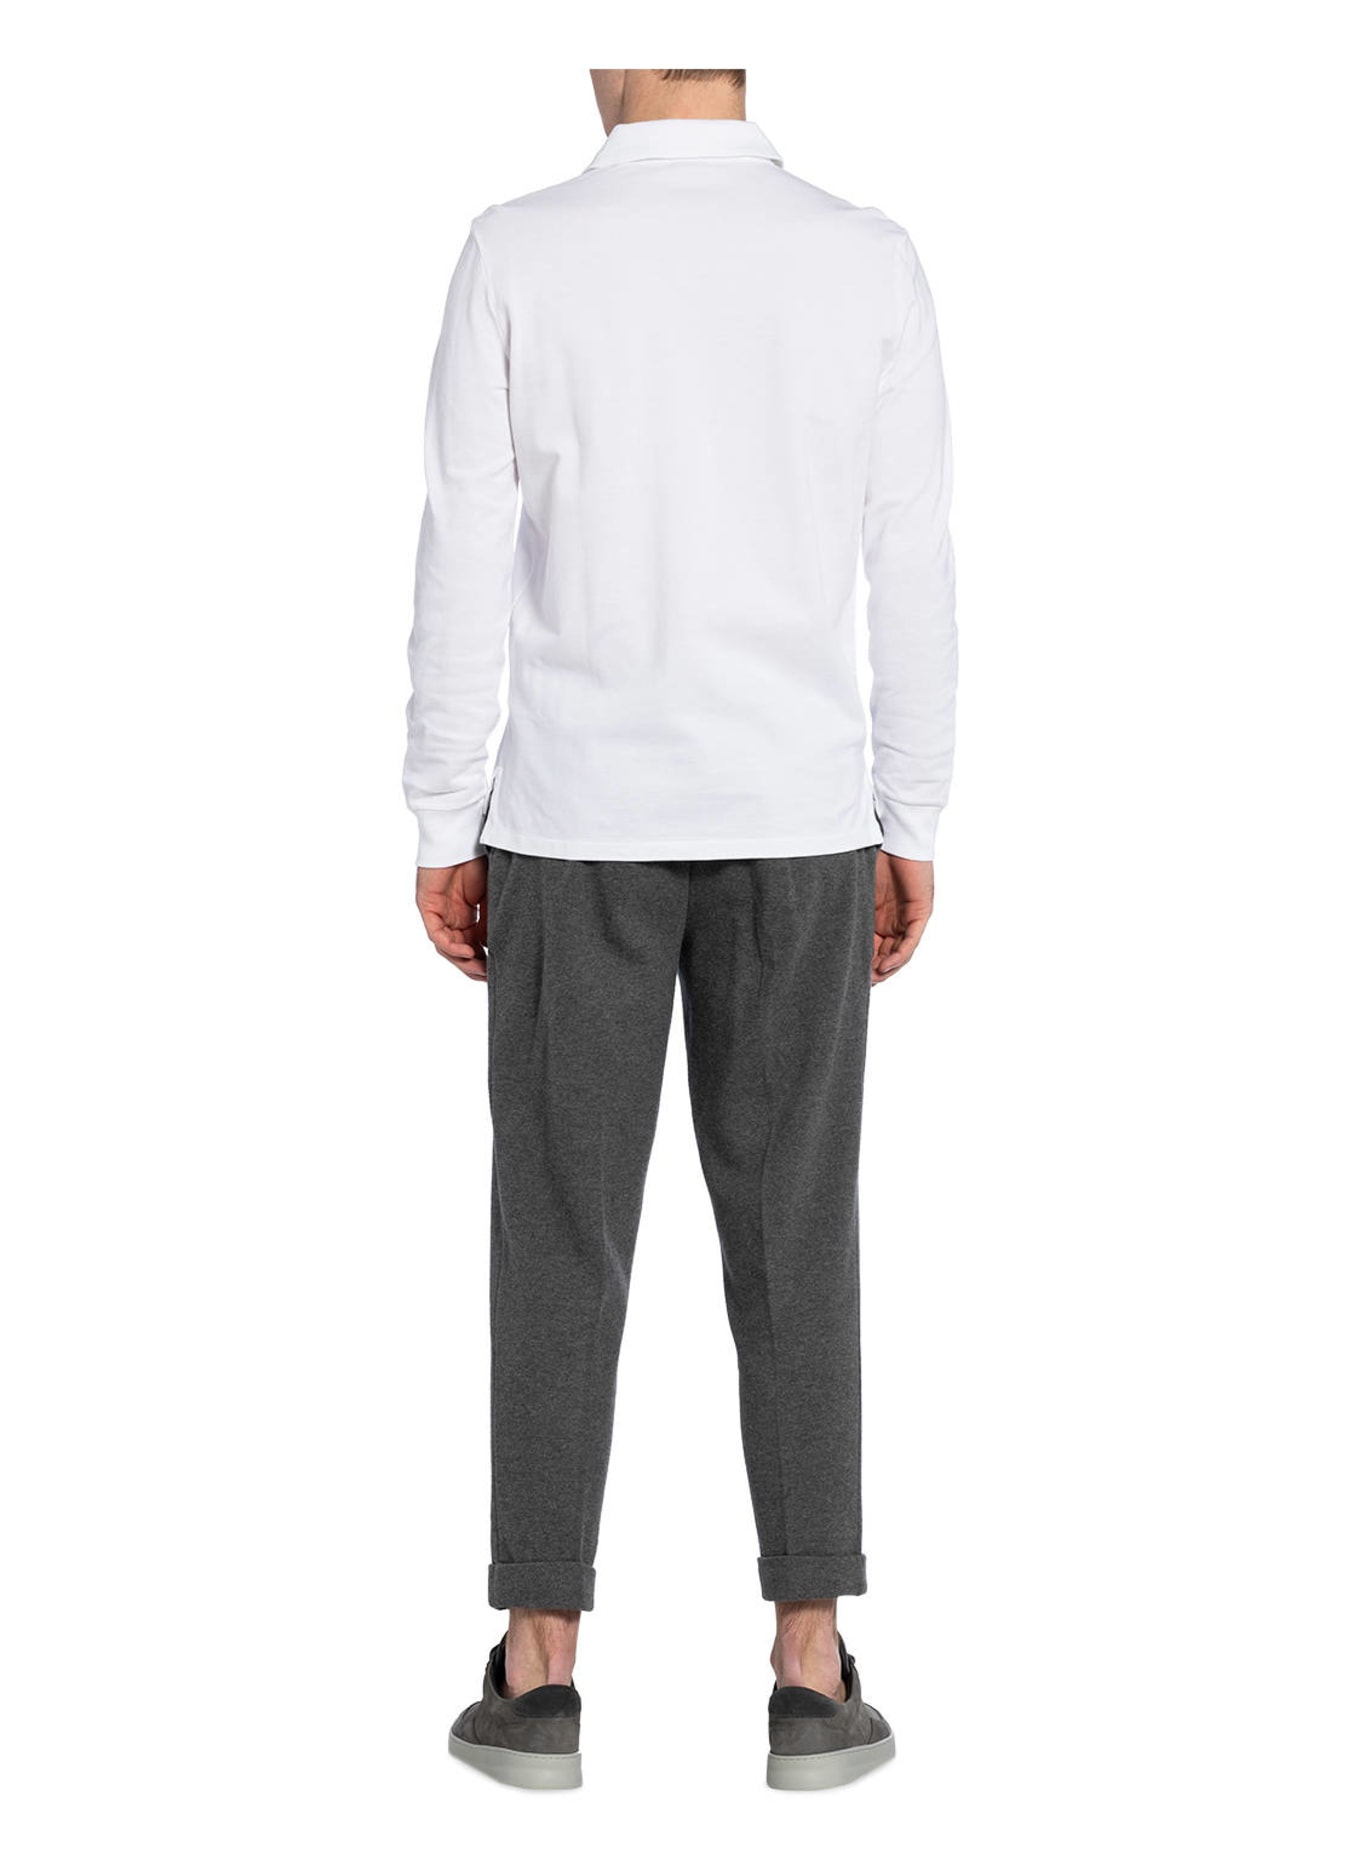 POLO RALPH LAUREN Piqué polo shirt custom slim fit, Color: WHITE (Image 3)